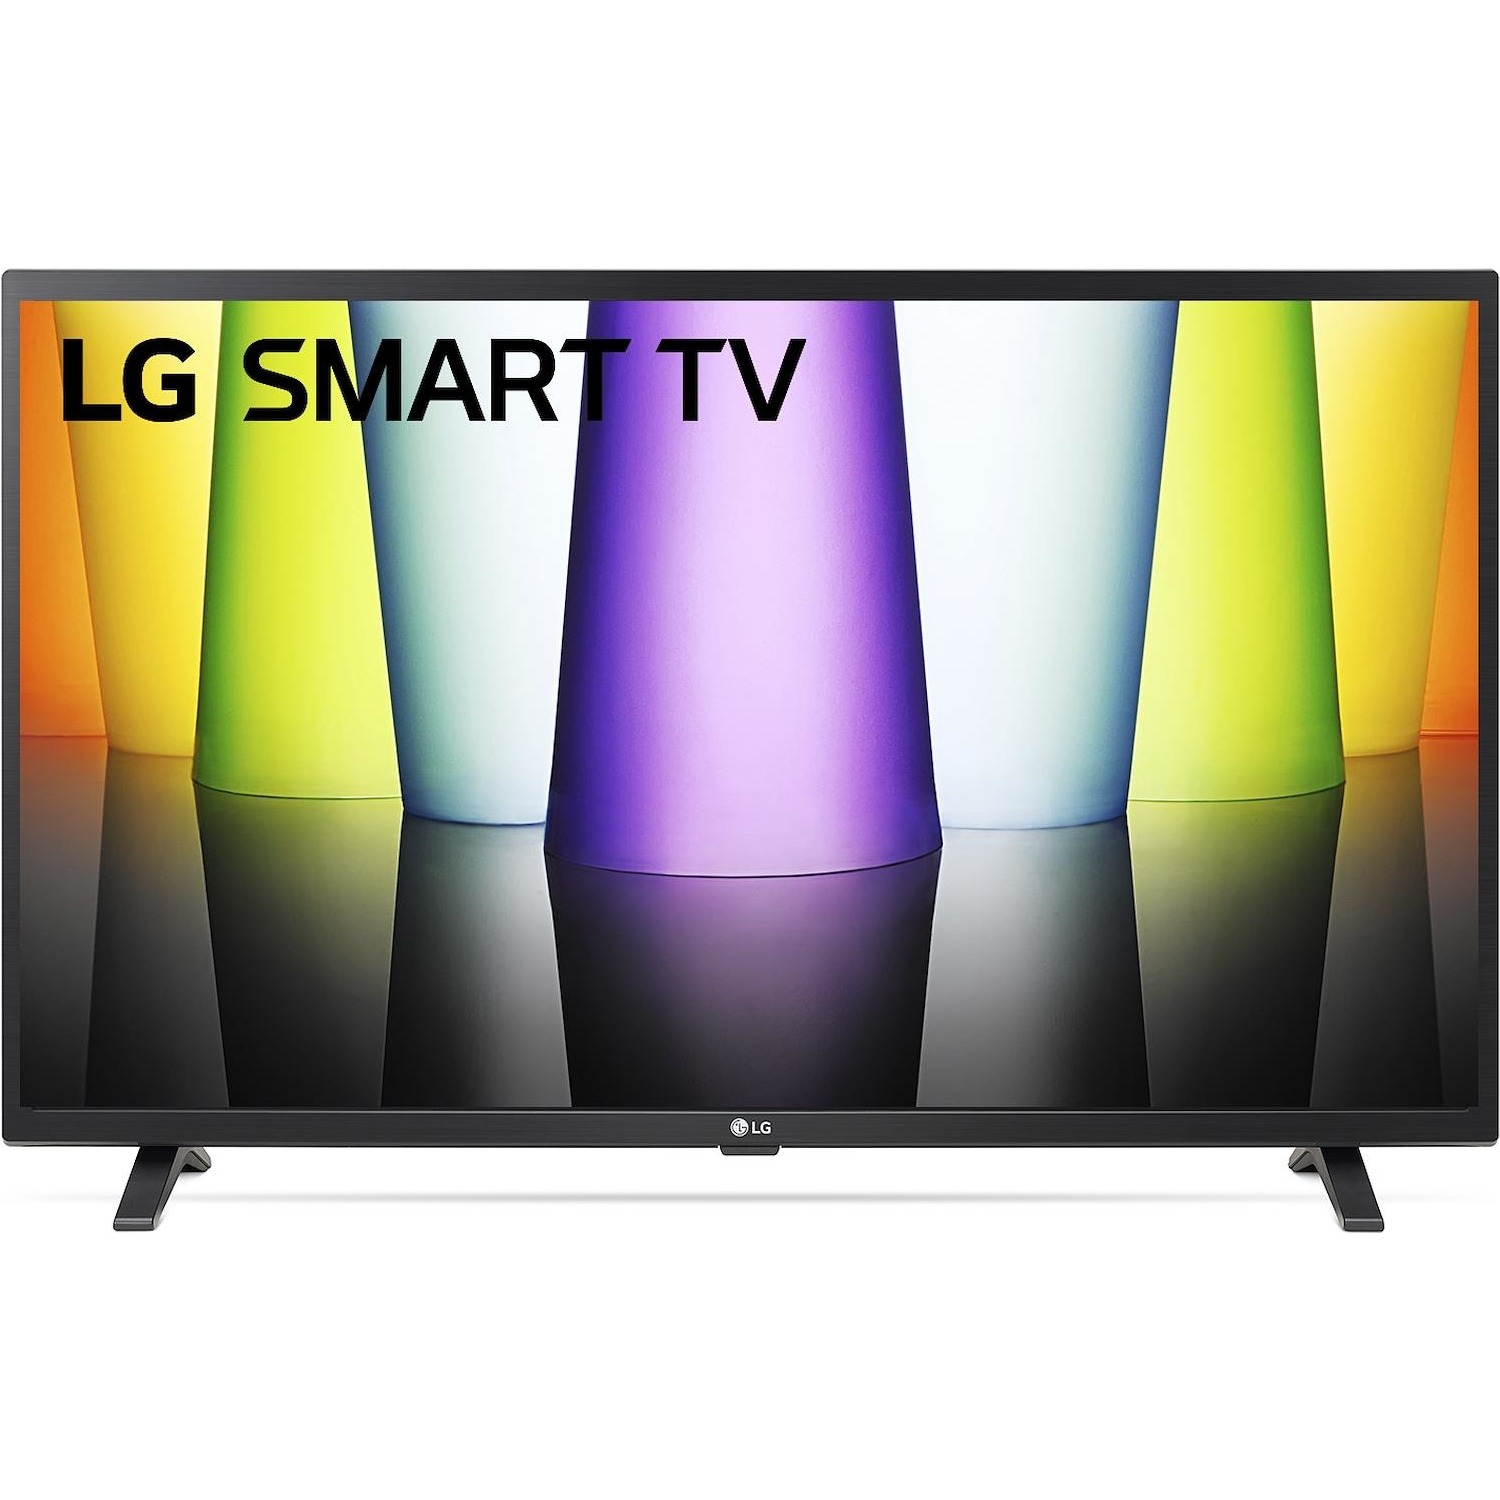 Immagine per TV LED LG 32LQ63006 Calibrato FULL HD HDR da DIMOStore